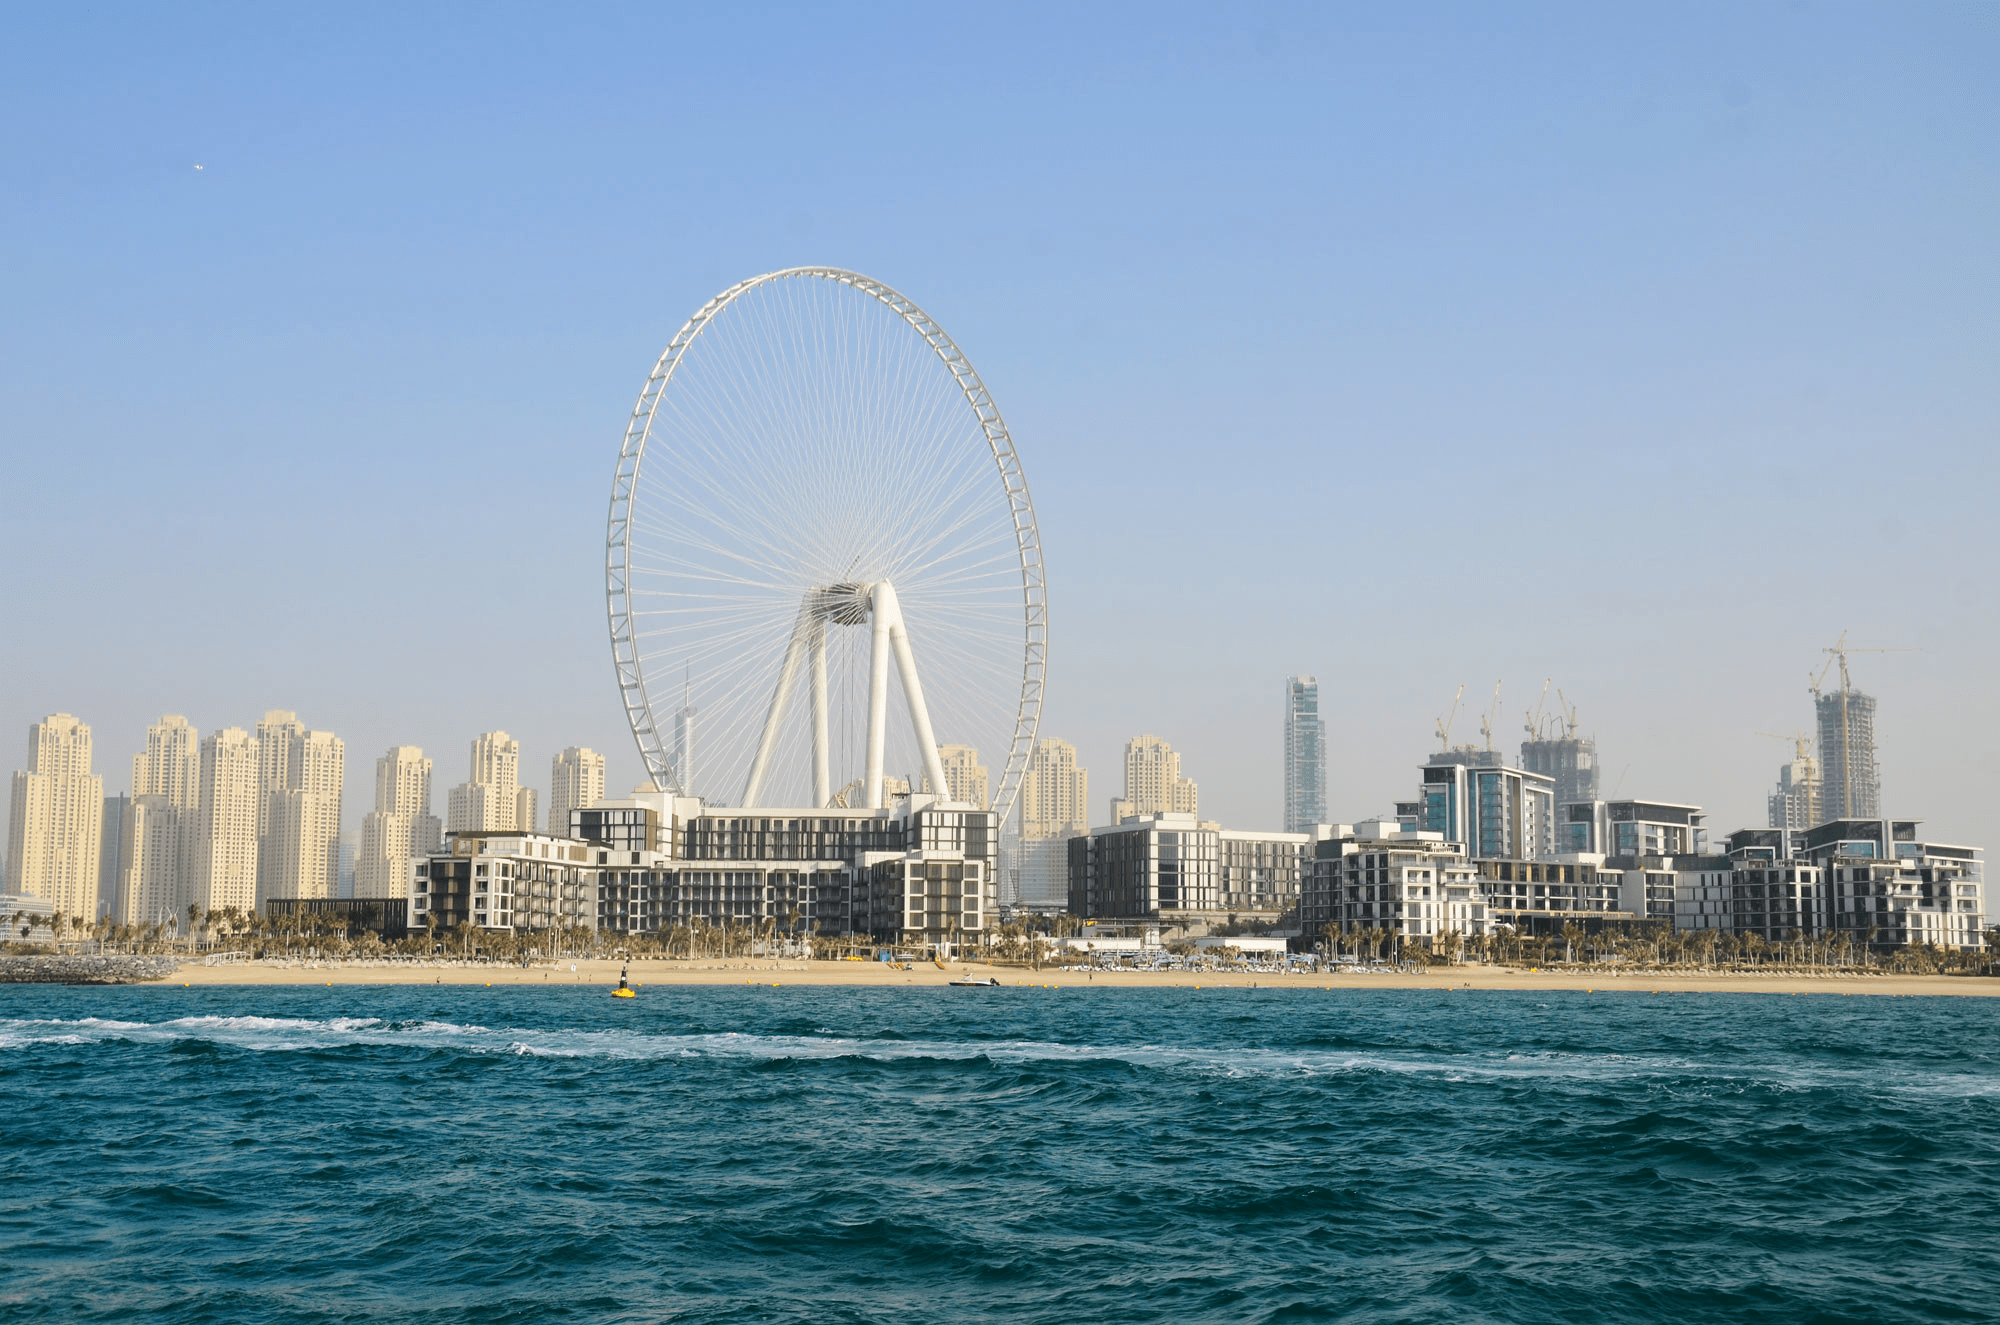 迪拜再添超级地标!世界上最大最高的摩天轮迪拜眼正式启用